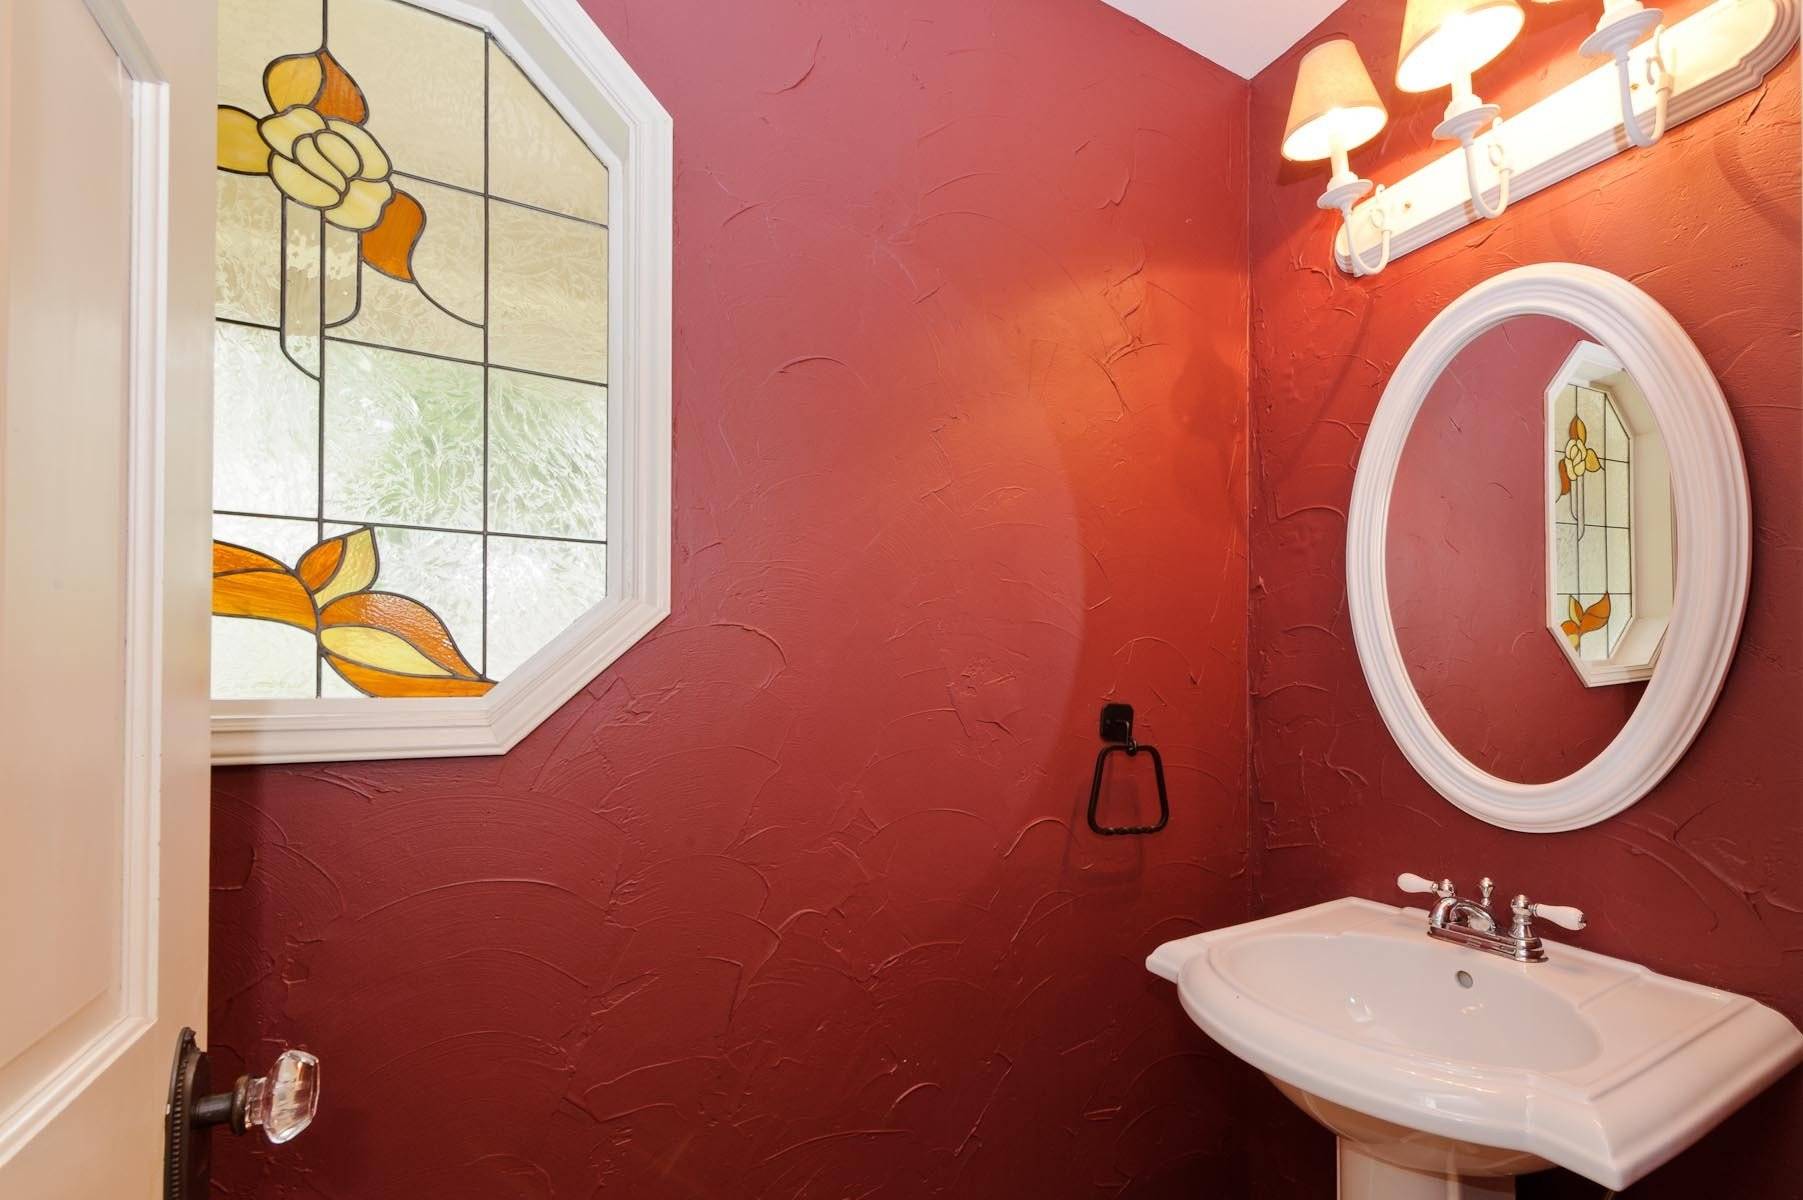 Идеальная краска для потолка в ванной: какую лучше выбрать?